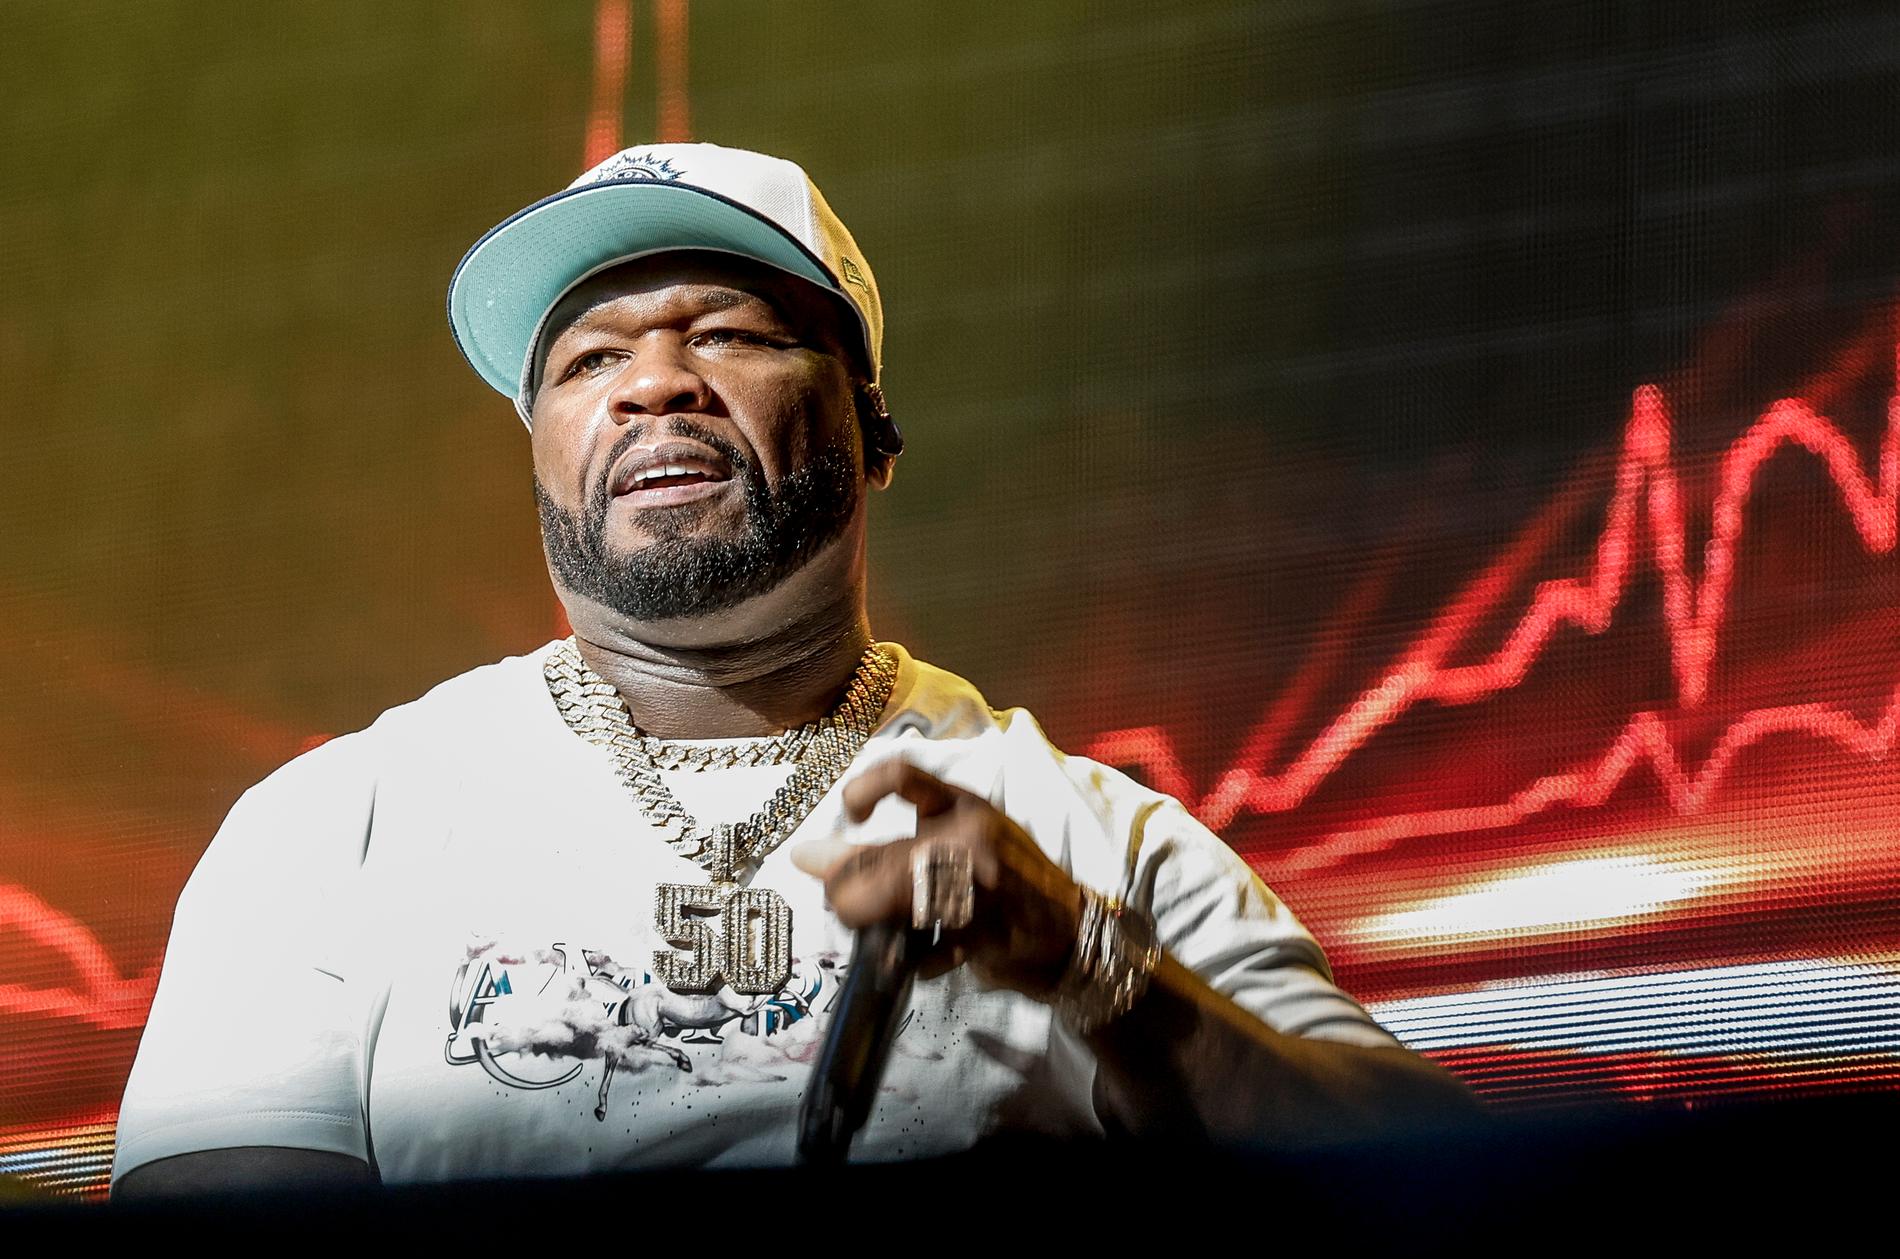 "När jag förälskade mig i hiphop så var det viktigt att du hade din egen stil, din grej som du representerade" säger Curtis "50 Cent" Jackson. Han firar att debutskivan "Get rich or die tryin'" fyller 20 år och besöker Stockholm på sin världsturné. Arkivbild.